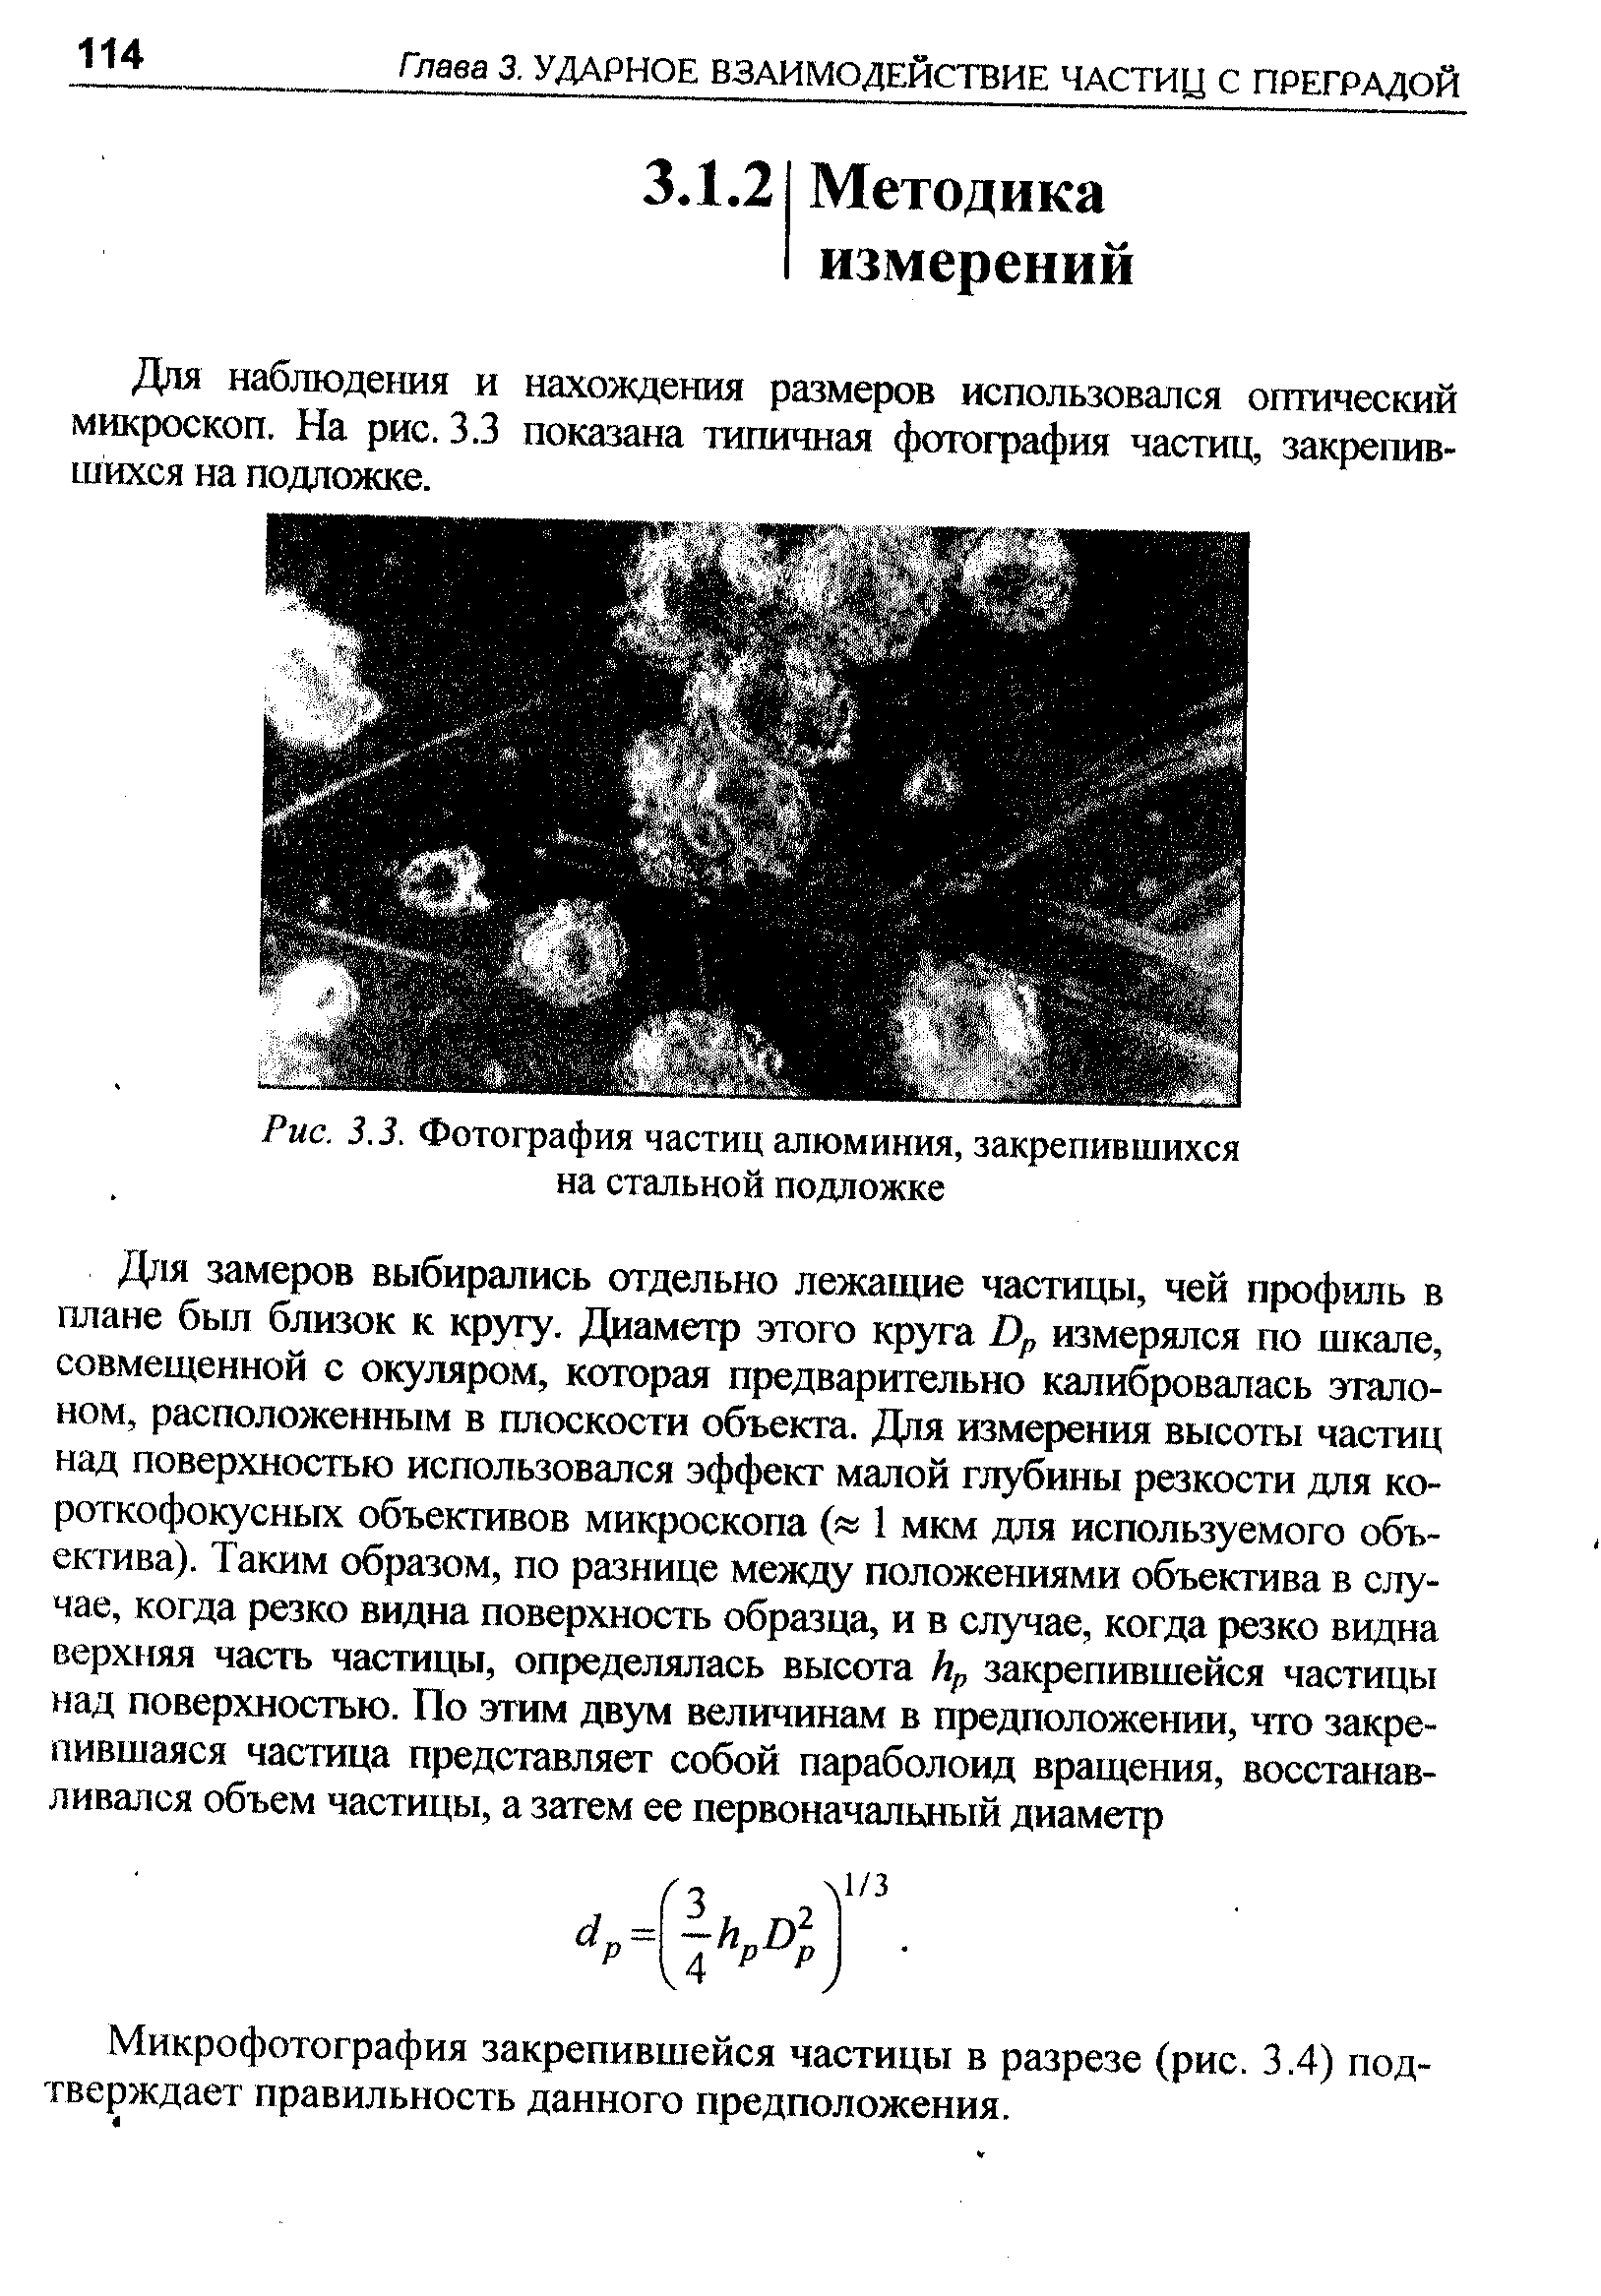 Для наблюдешя и нахождения размеров использовался оптический микроскоп. На рис. 3.3 показана типичная фотография частиц, закрепившихся на под ложке.
